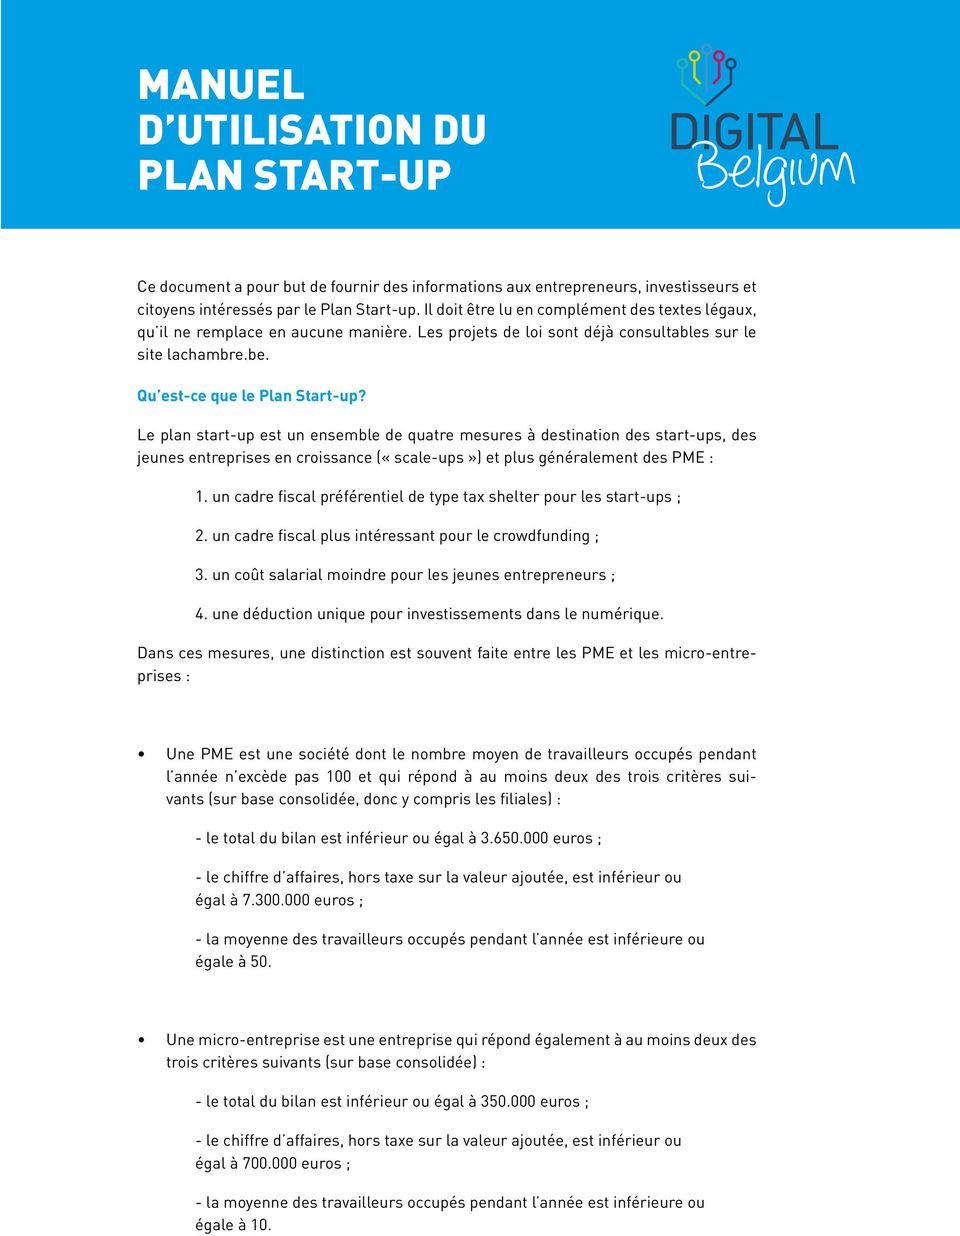 Le plan start-up est un ensemble de quatre mesures à destination des start-ups, des jeunes entreprises en croissance («scale-ups») et plus généralement des PME : 1.